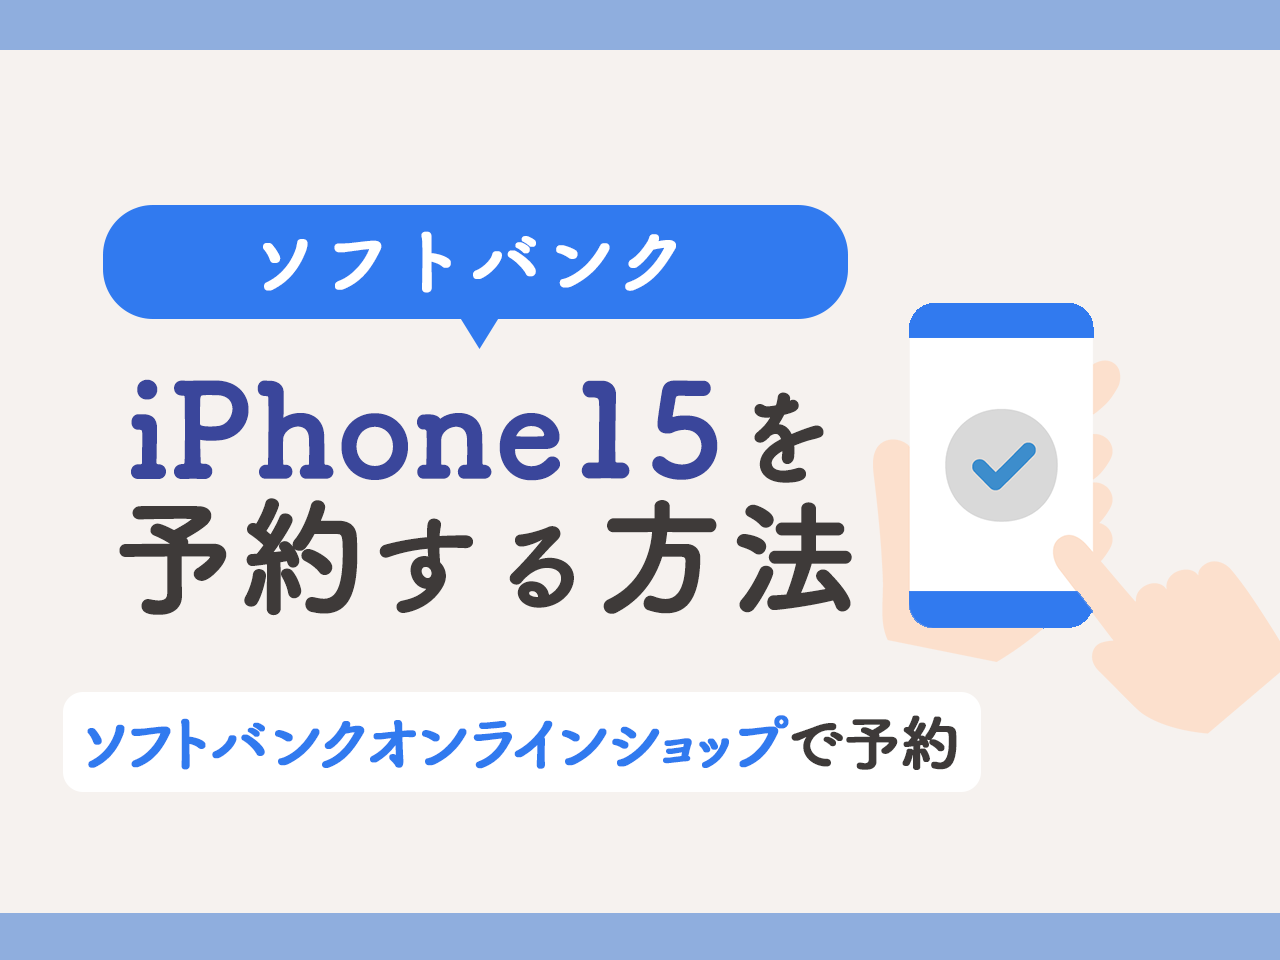 ソフトバンクでiPhone15を予約する方法